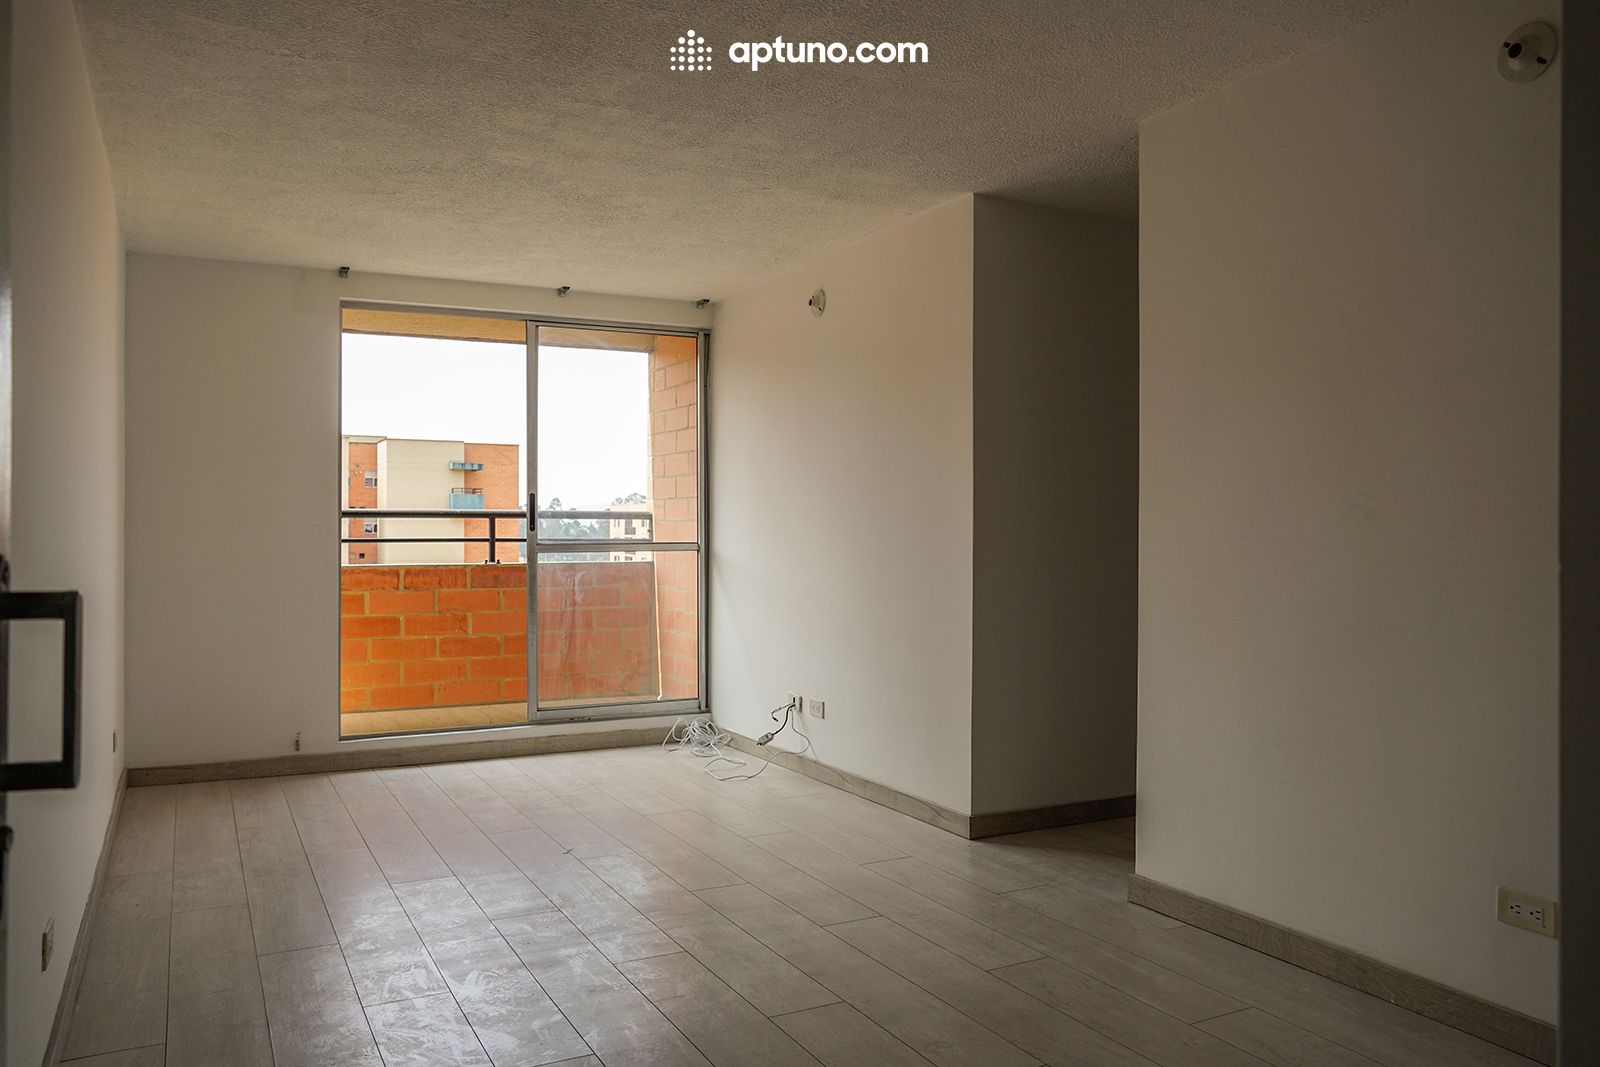 Apartamento en arriendo Madrid 54 m² - $ 850.000,00